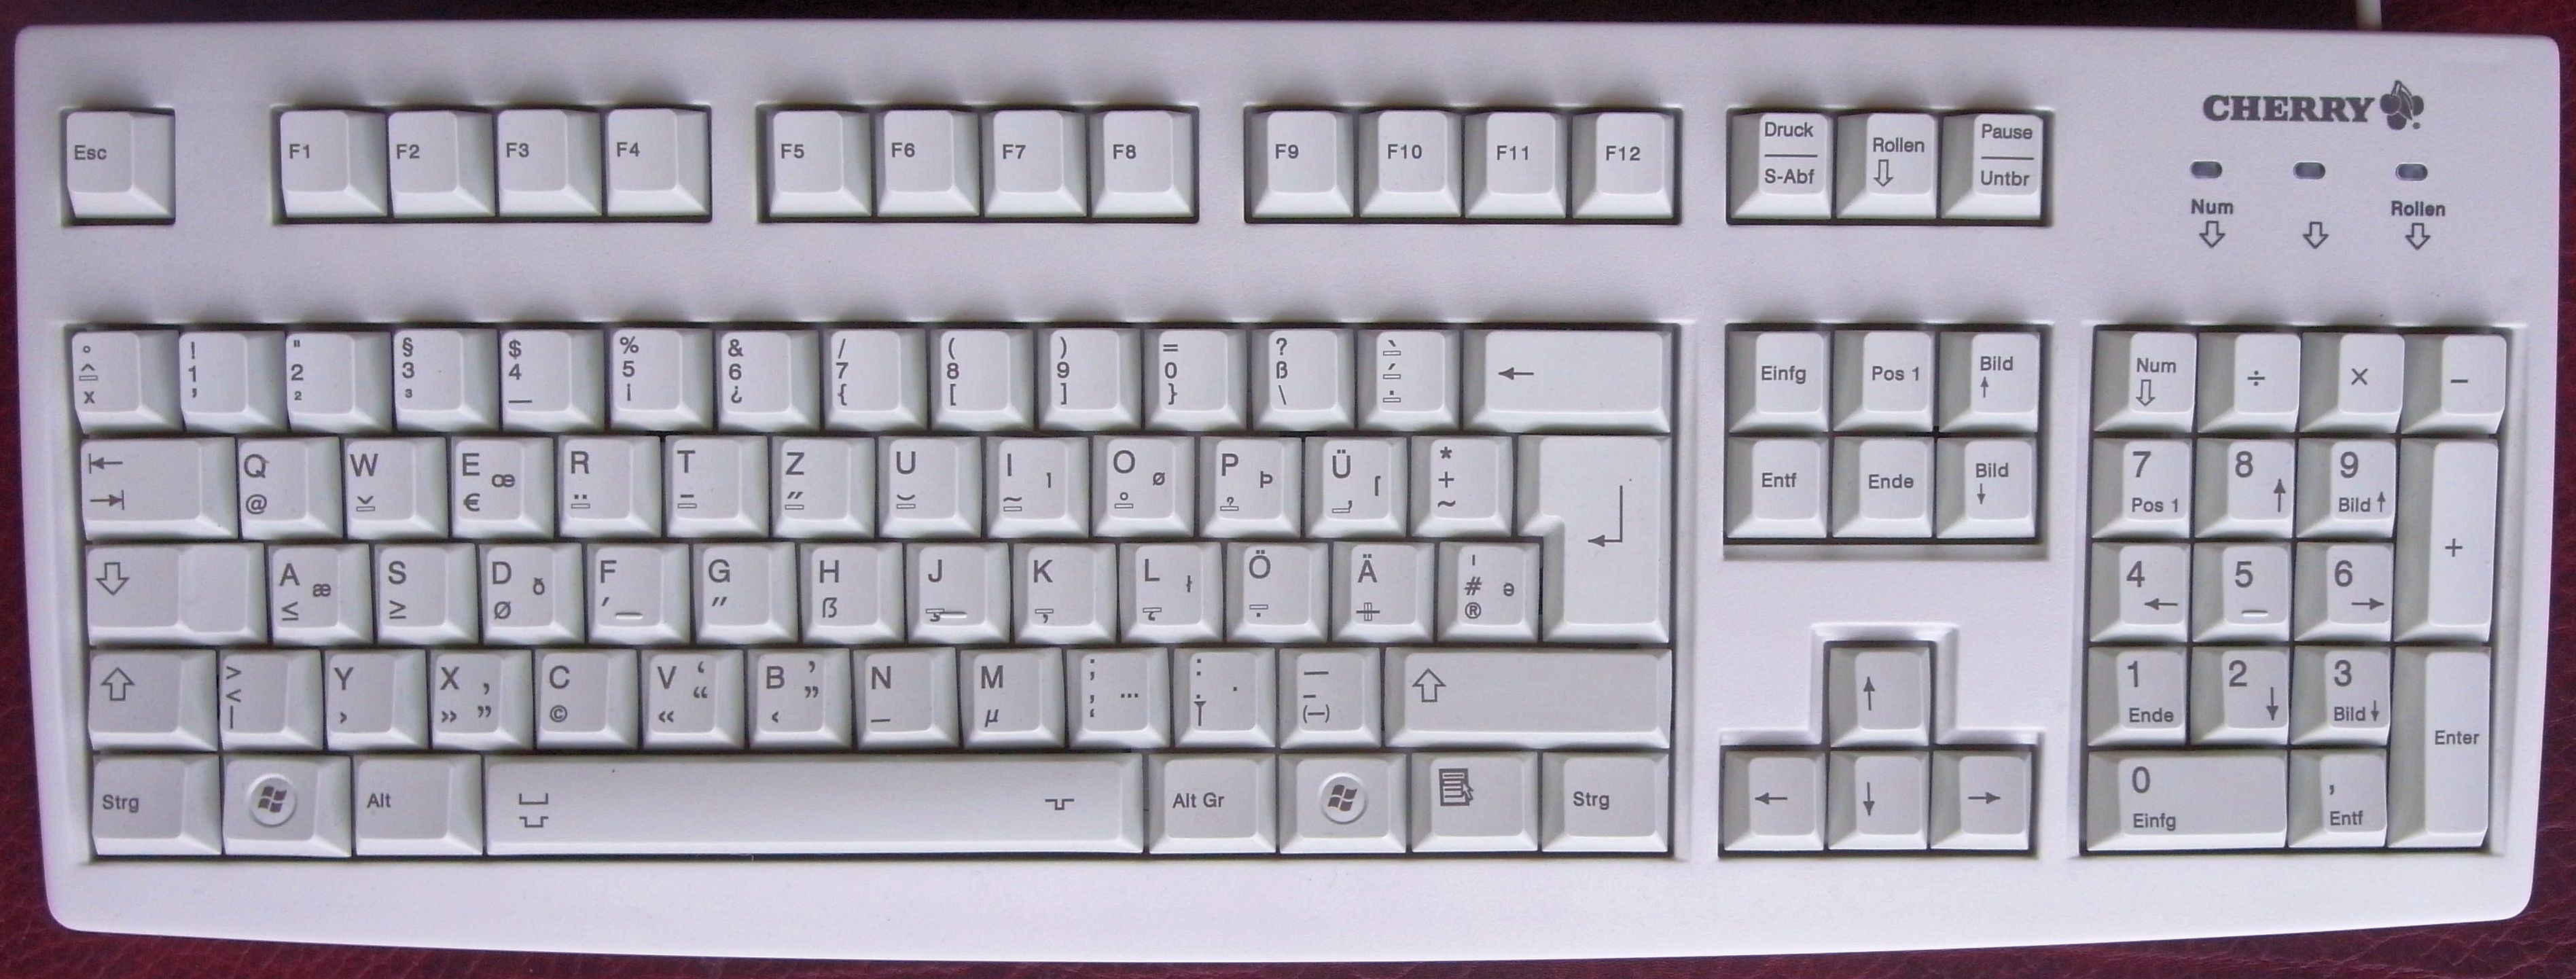 German-T2-Keyboard-Prototype-May-2012.jpg